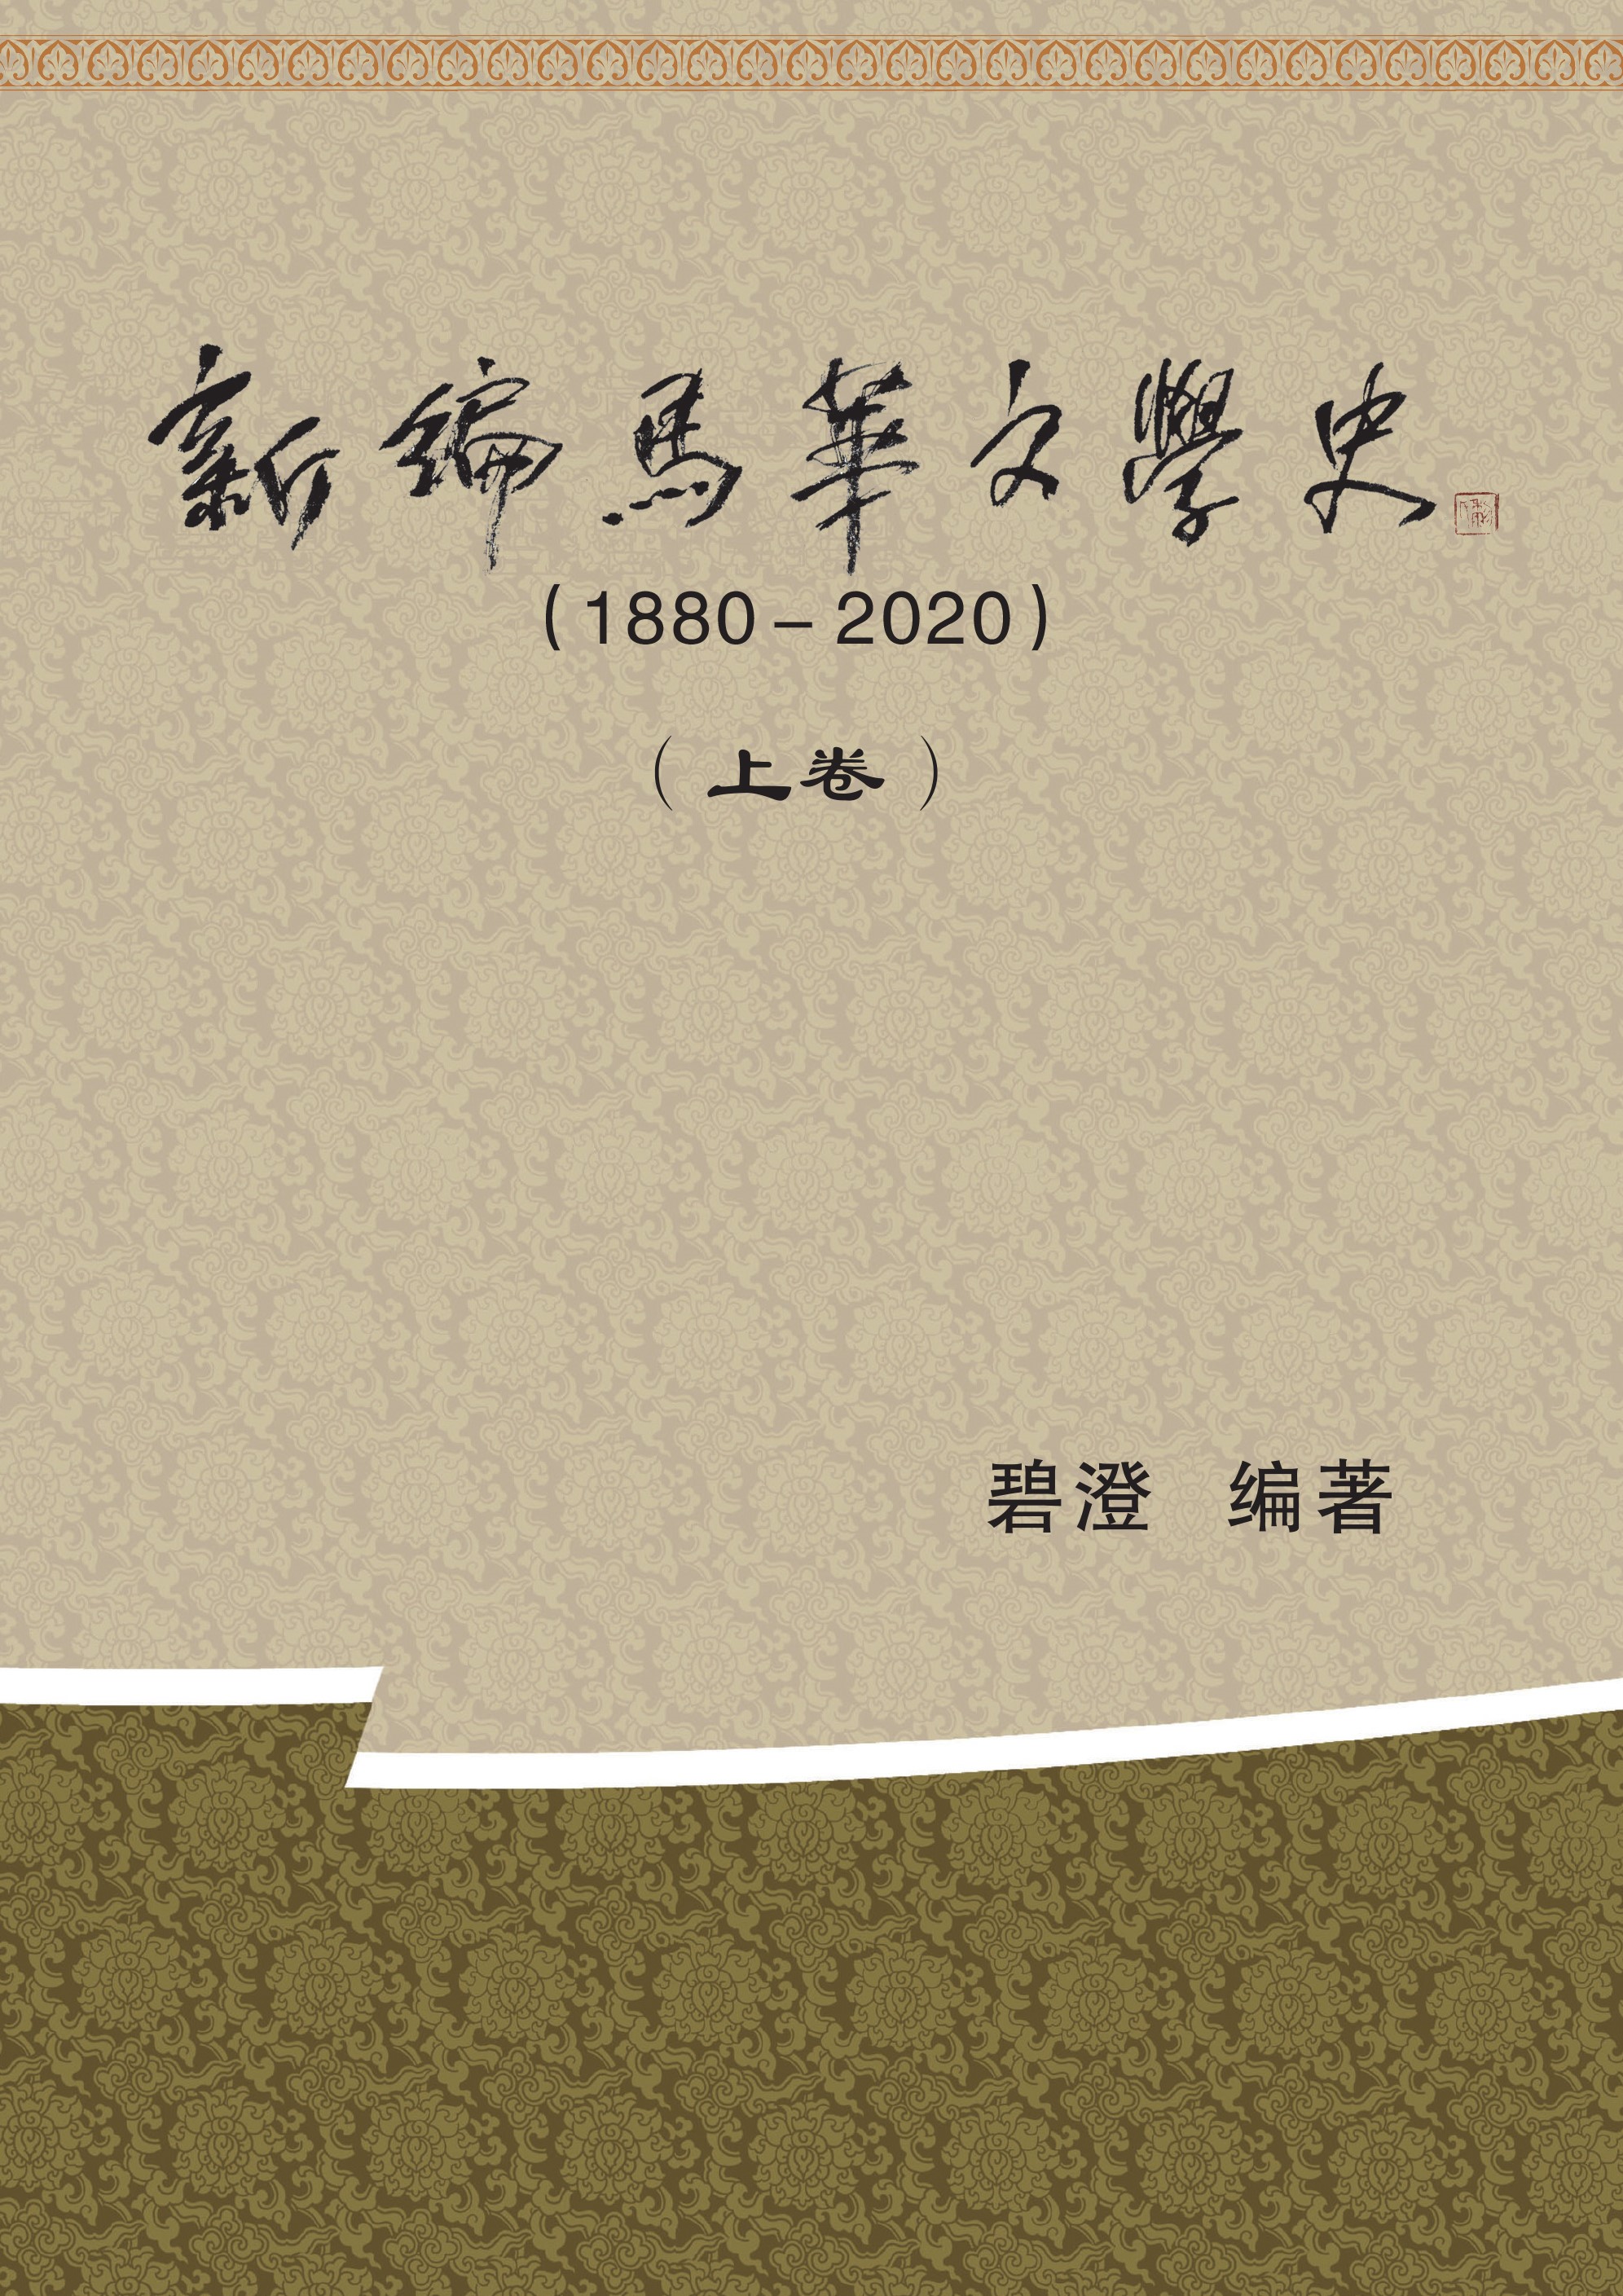 新編馬華文學史 (1880- 2020)（上、下  卷）